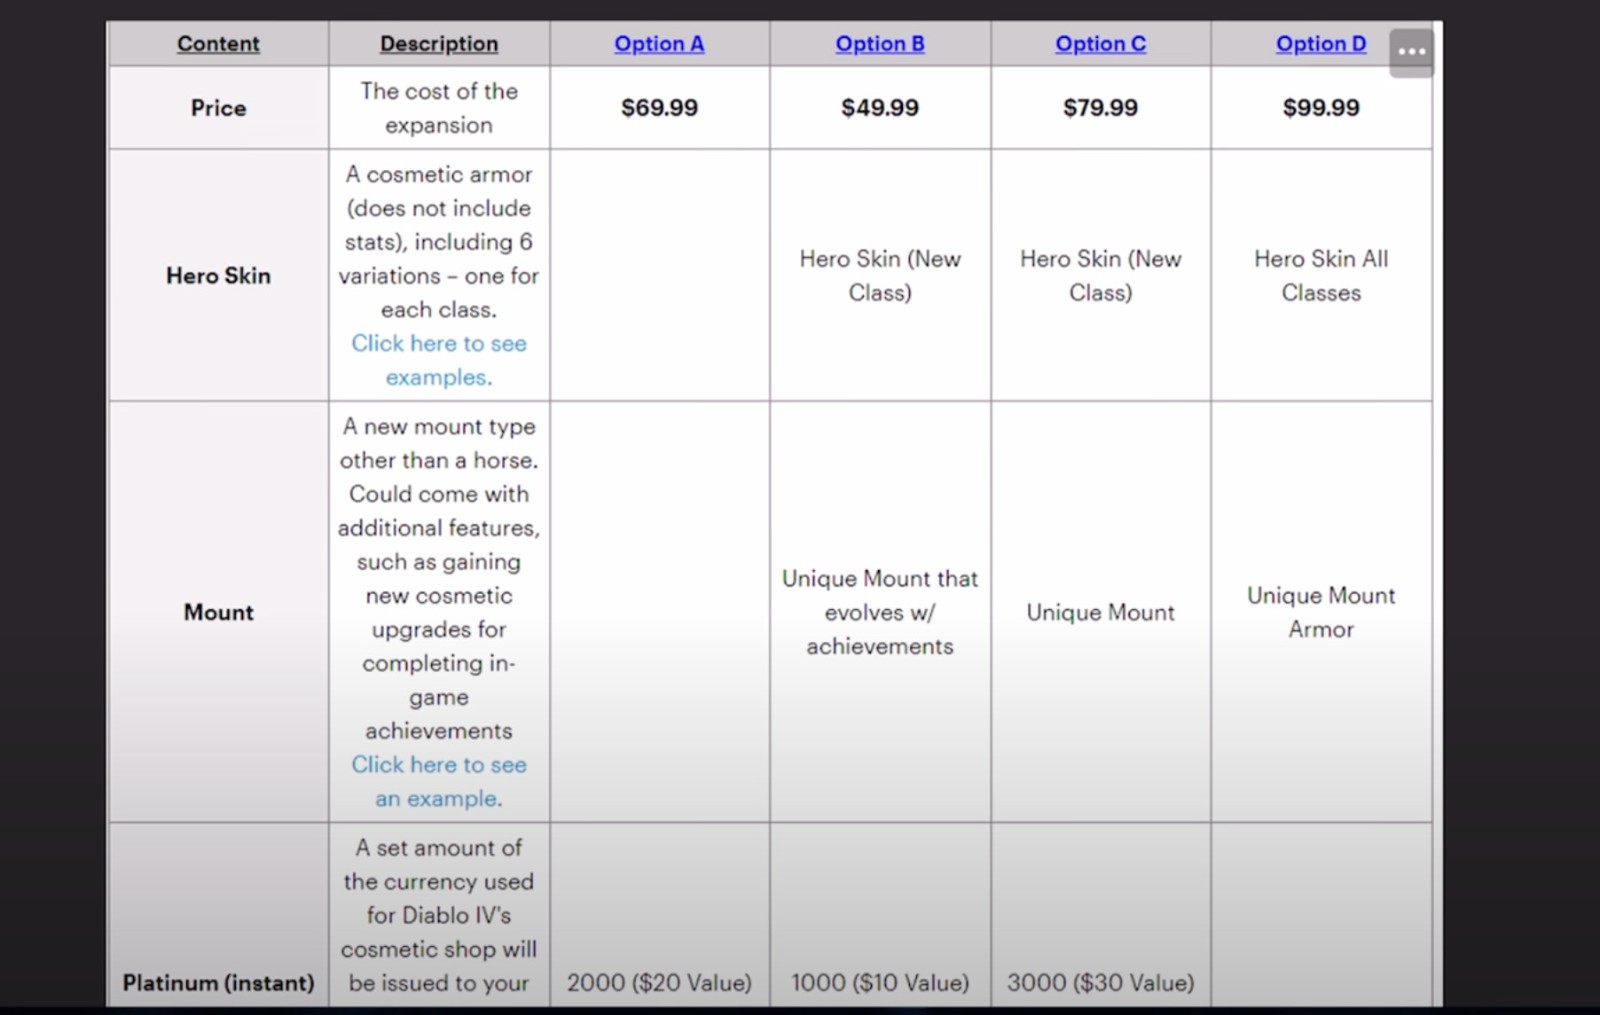 《暗黑4》资料片内部调查泄露 售价最高达到100美元